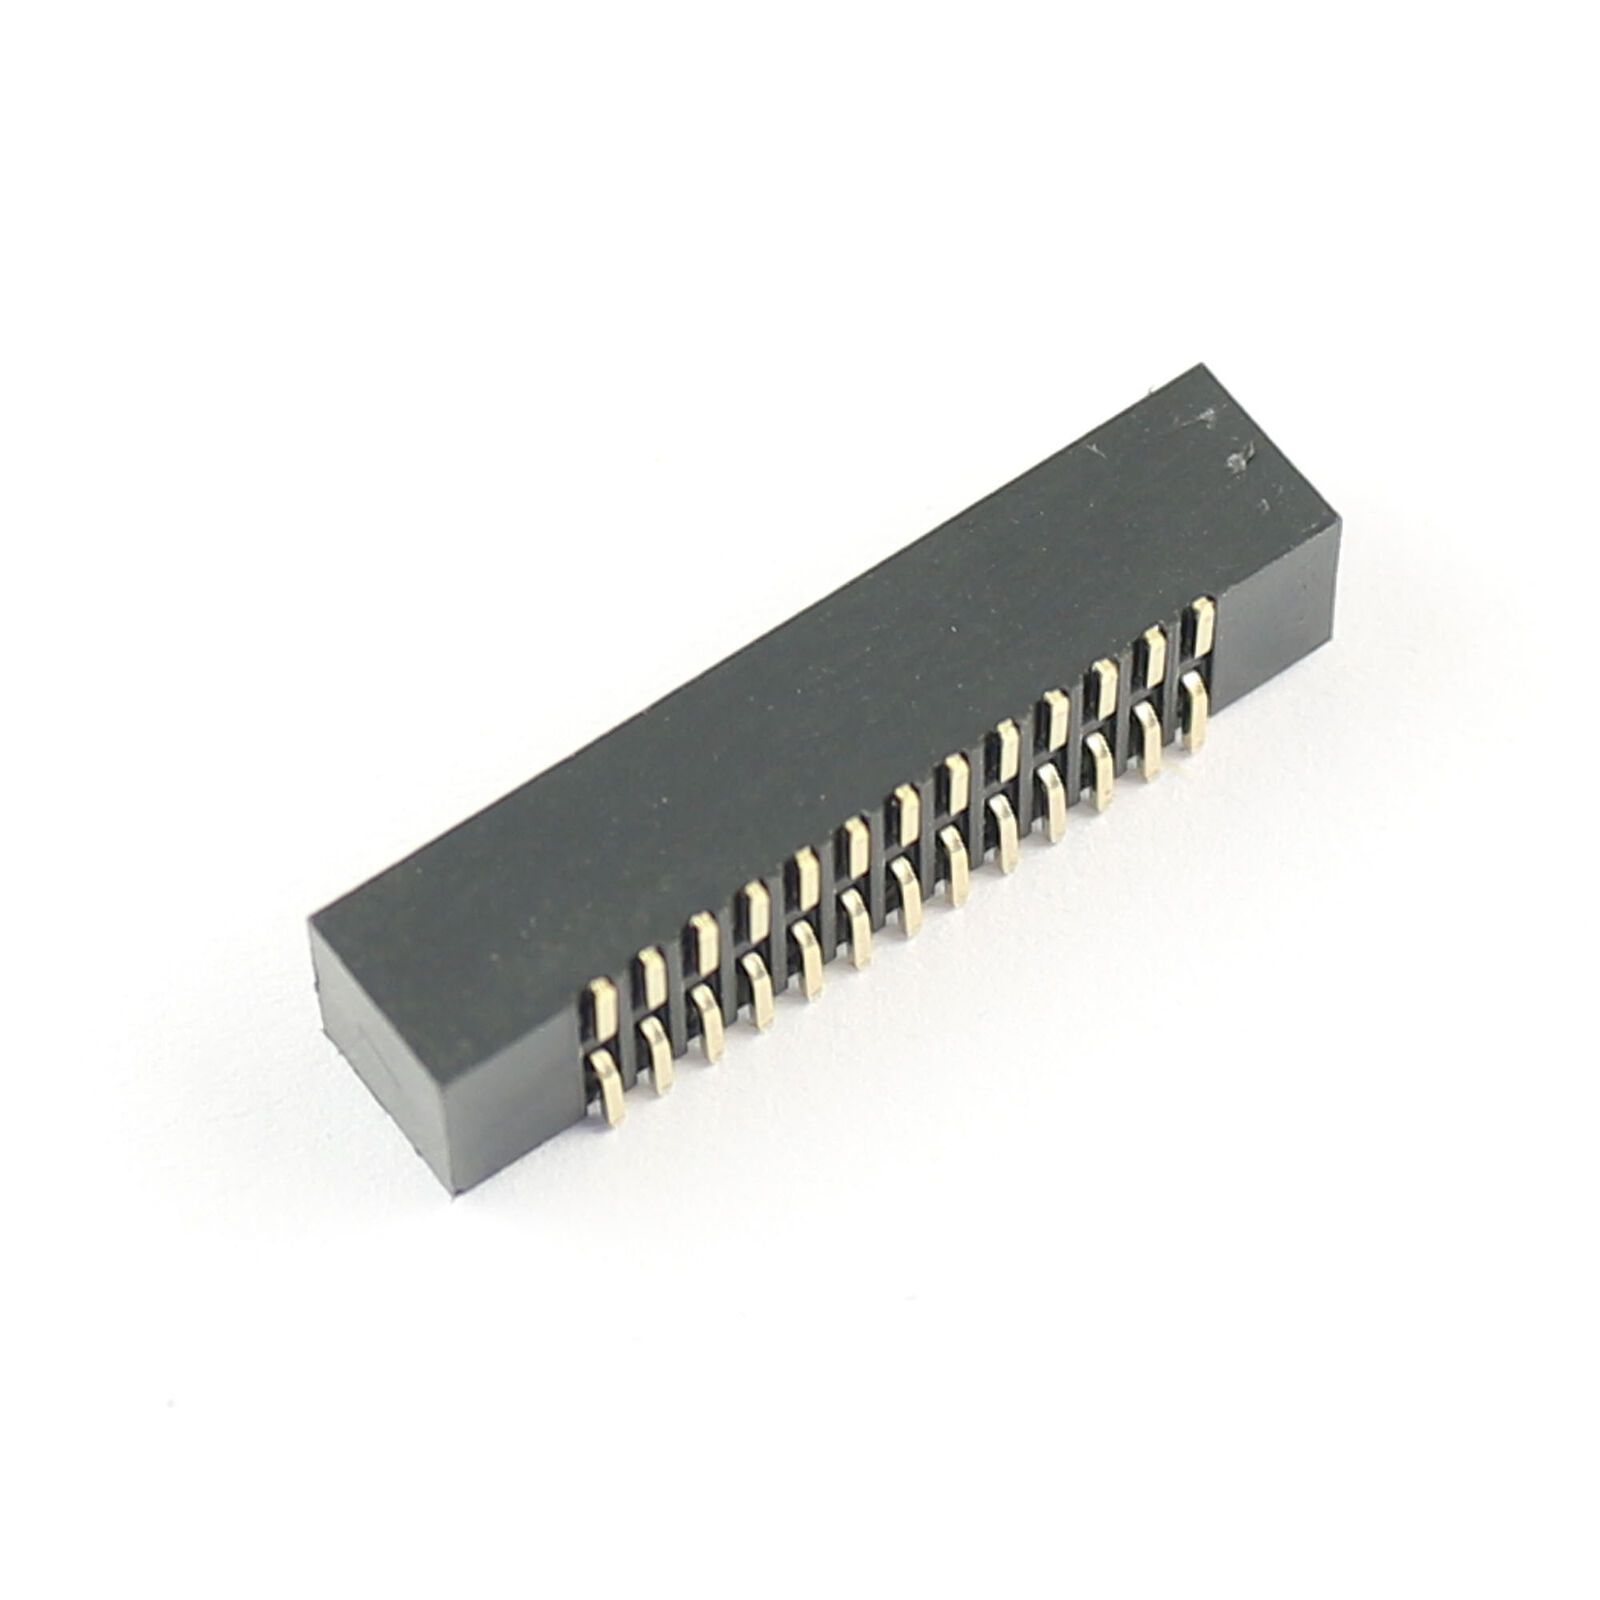 Pin header 2x13 pin 1